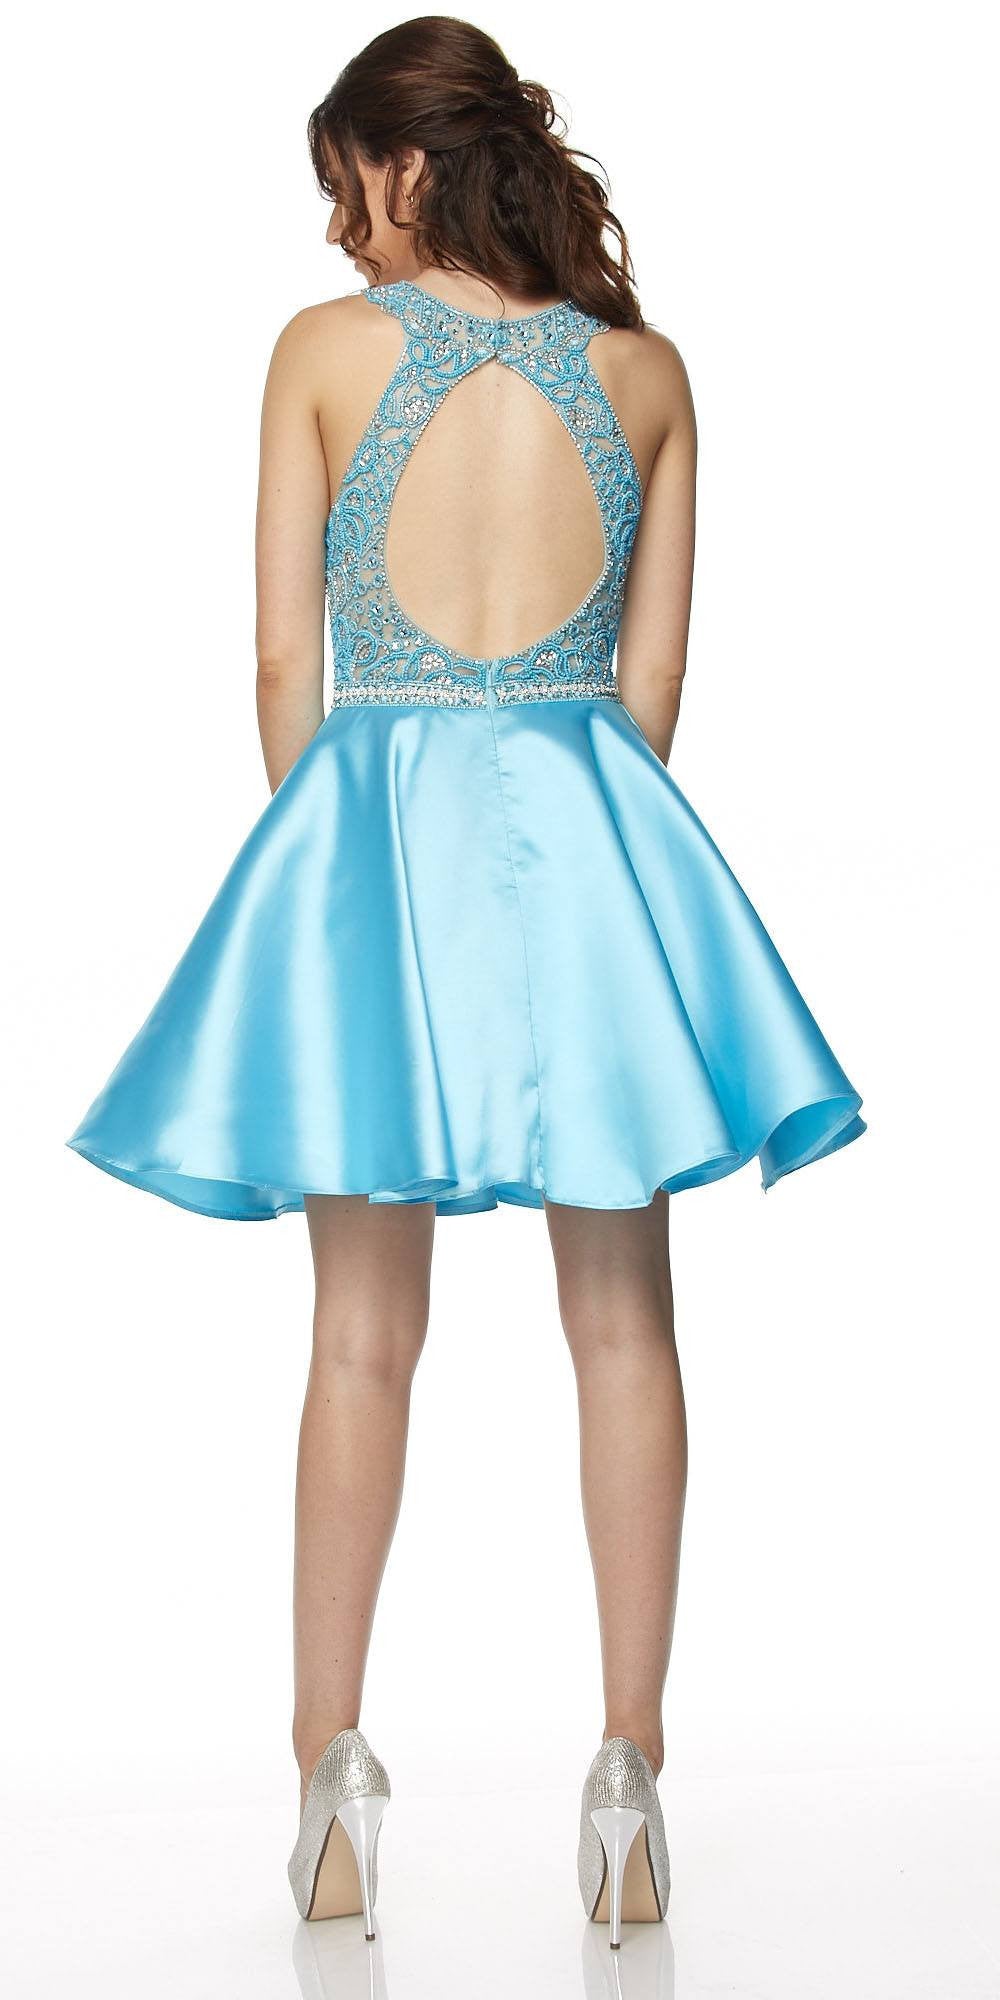 Juliet 779 Turquoise Embellished Bodice Short Prom Dress Sleeveless